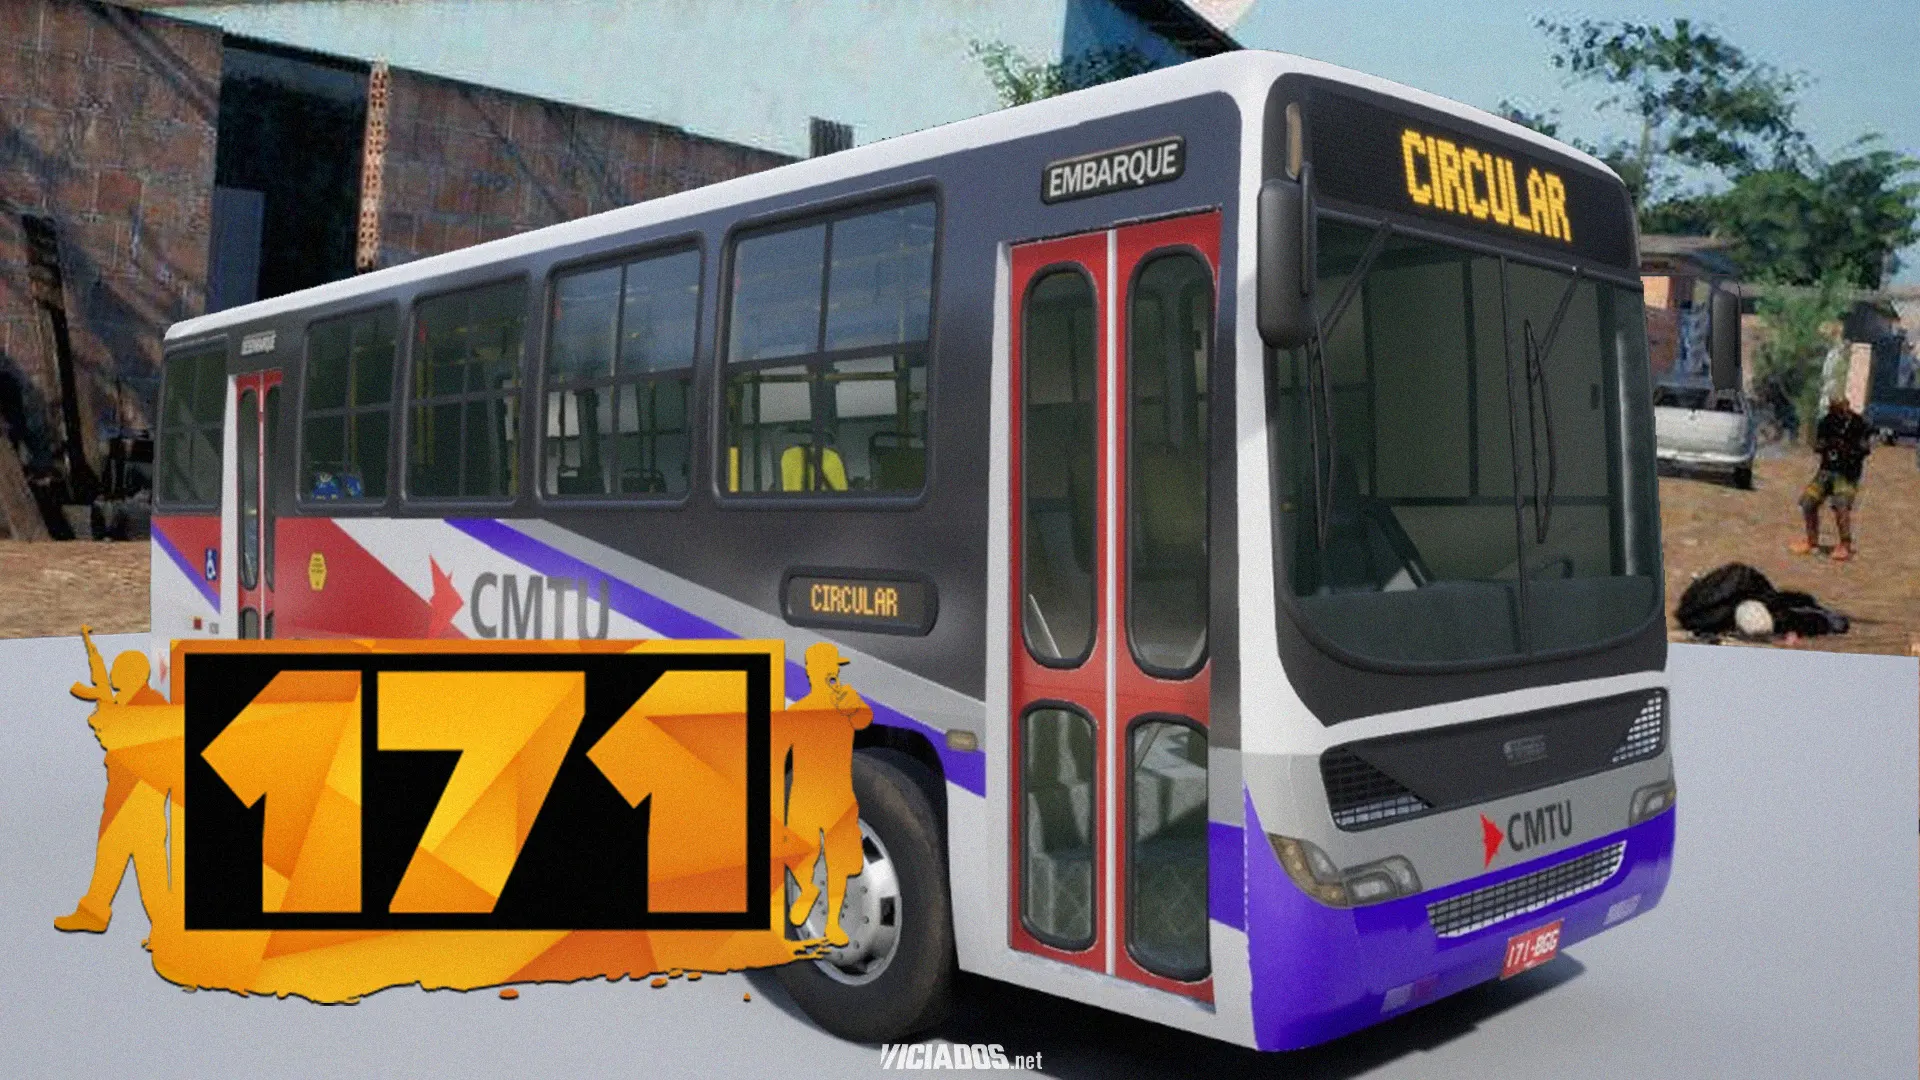 171 | GTA do Brasil vai ganhar update com transporte público; Veja o primeiro teaser 2023 Viciados